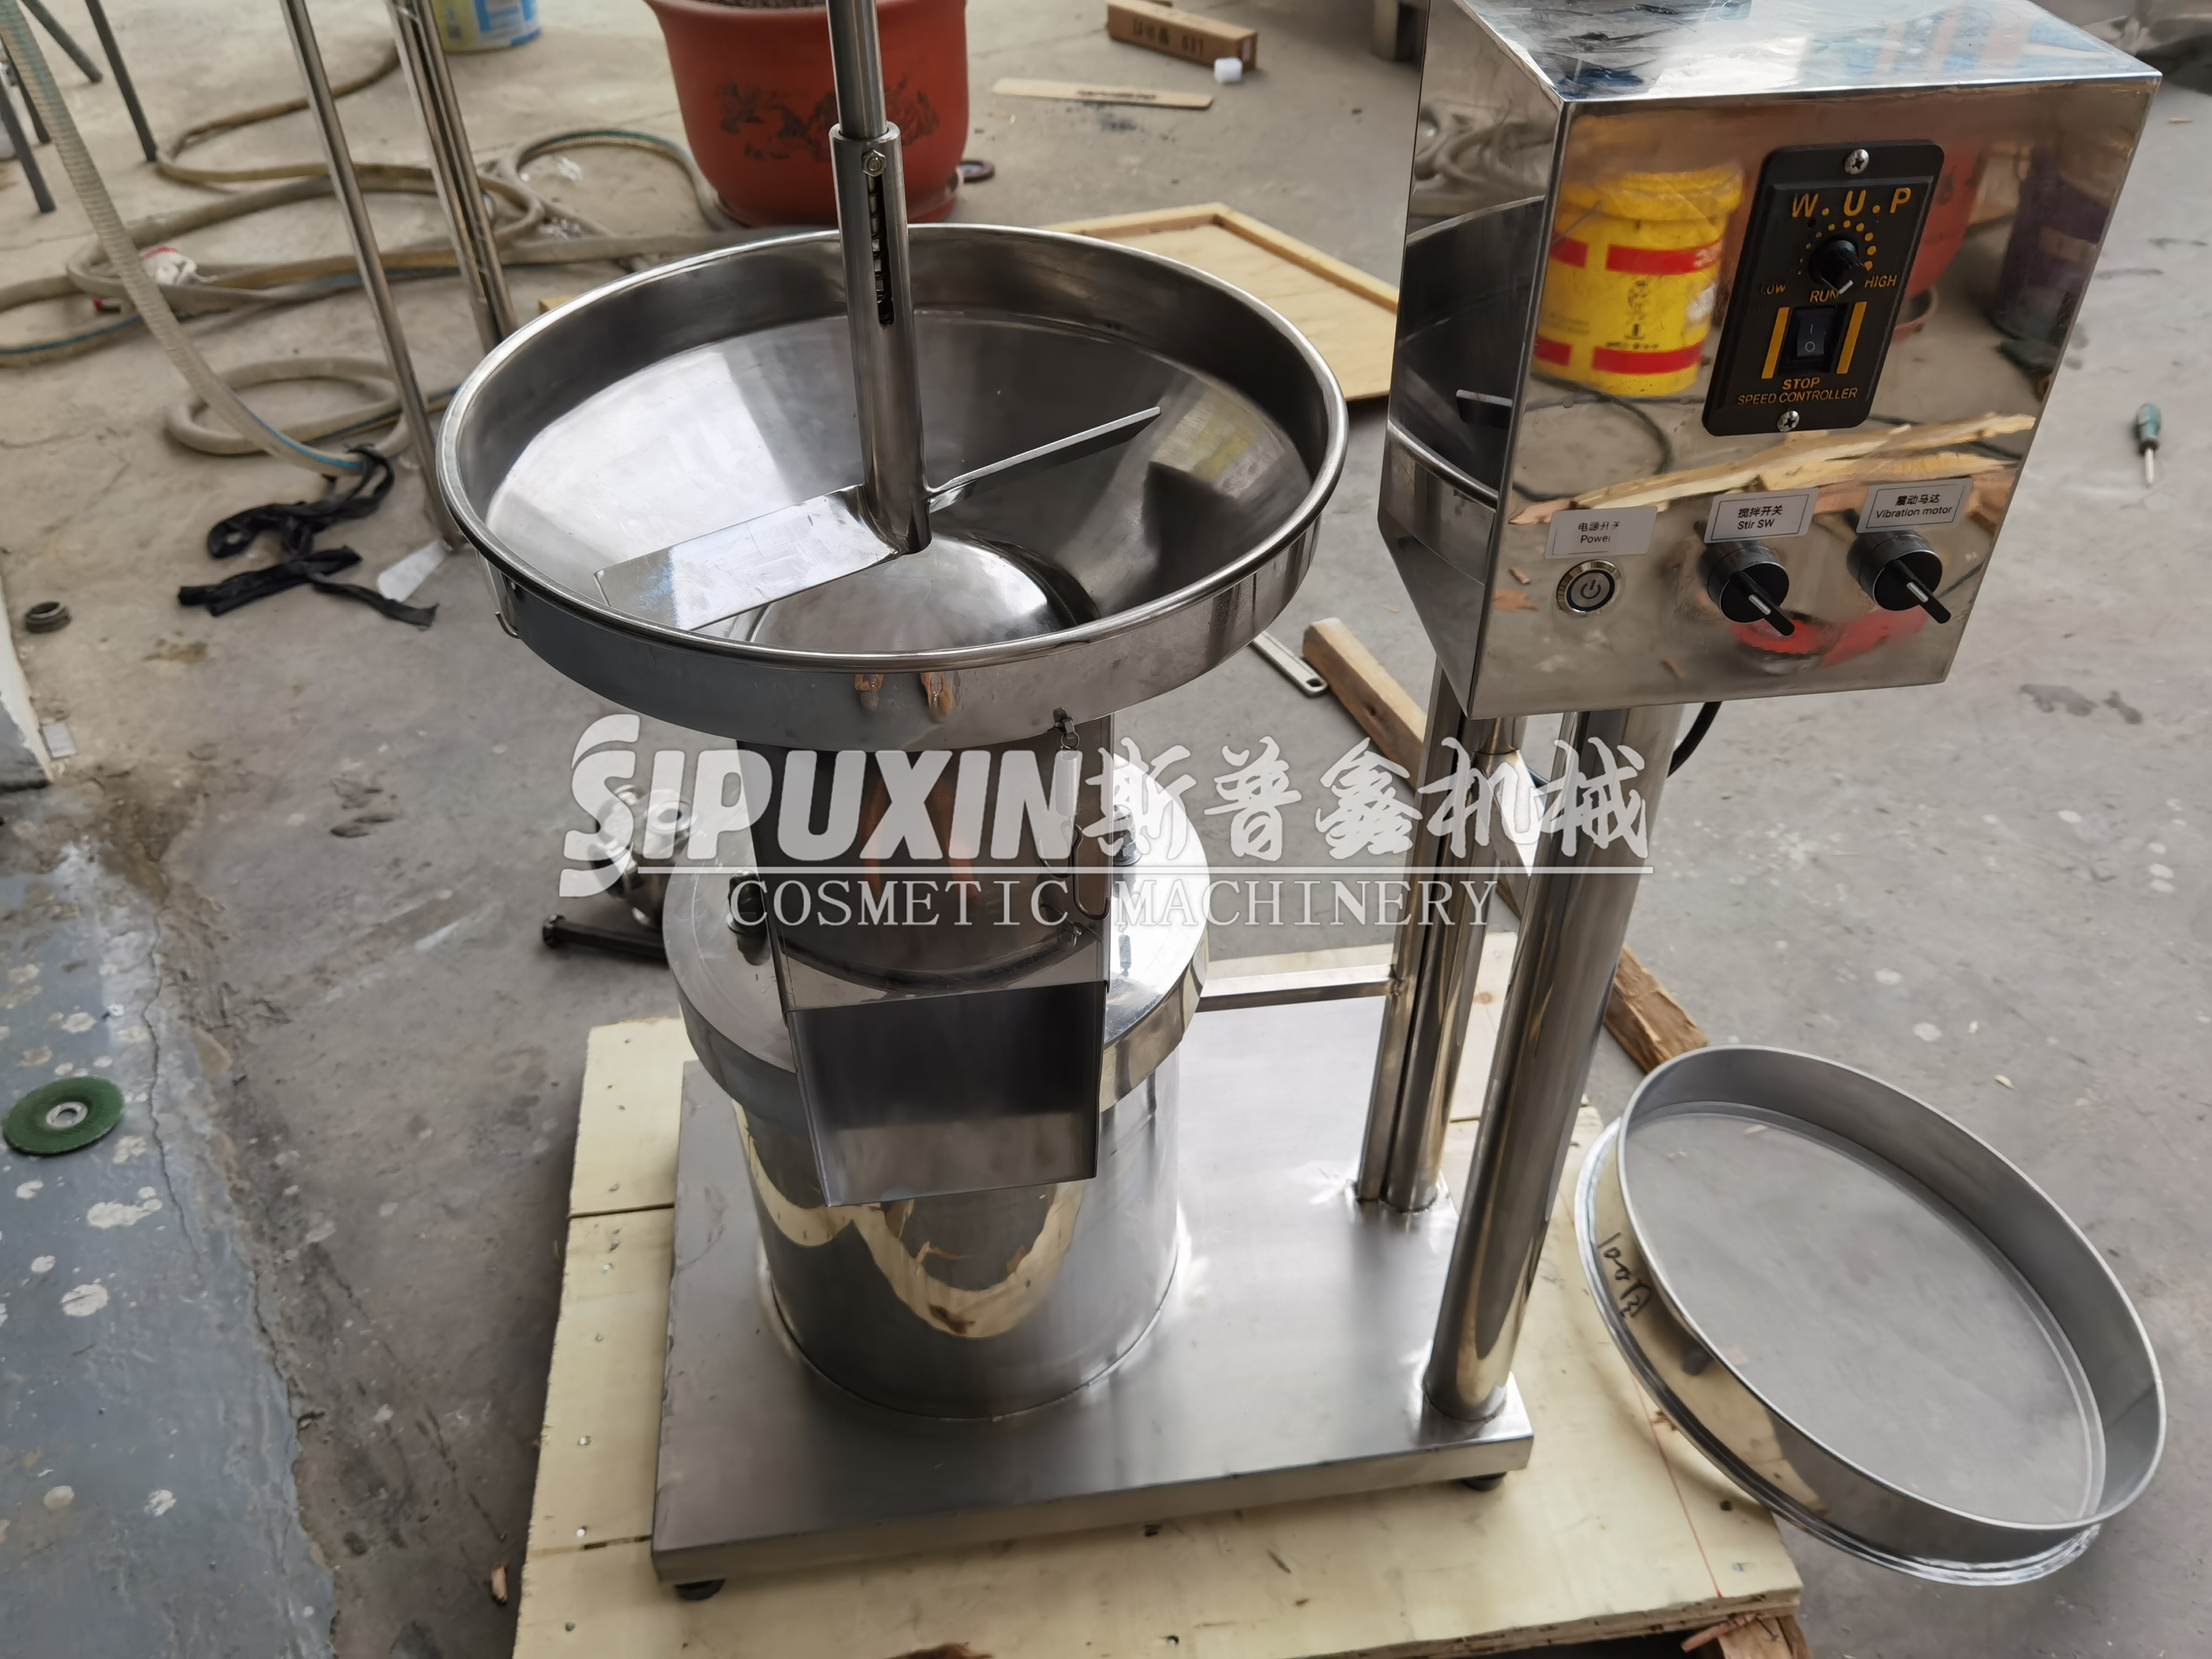 Machine de tamis de fondation Sipuxin pour la poudre cosmétique